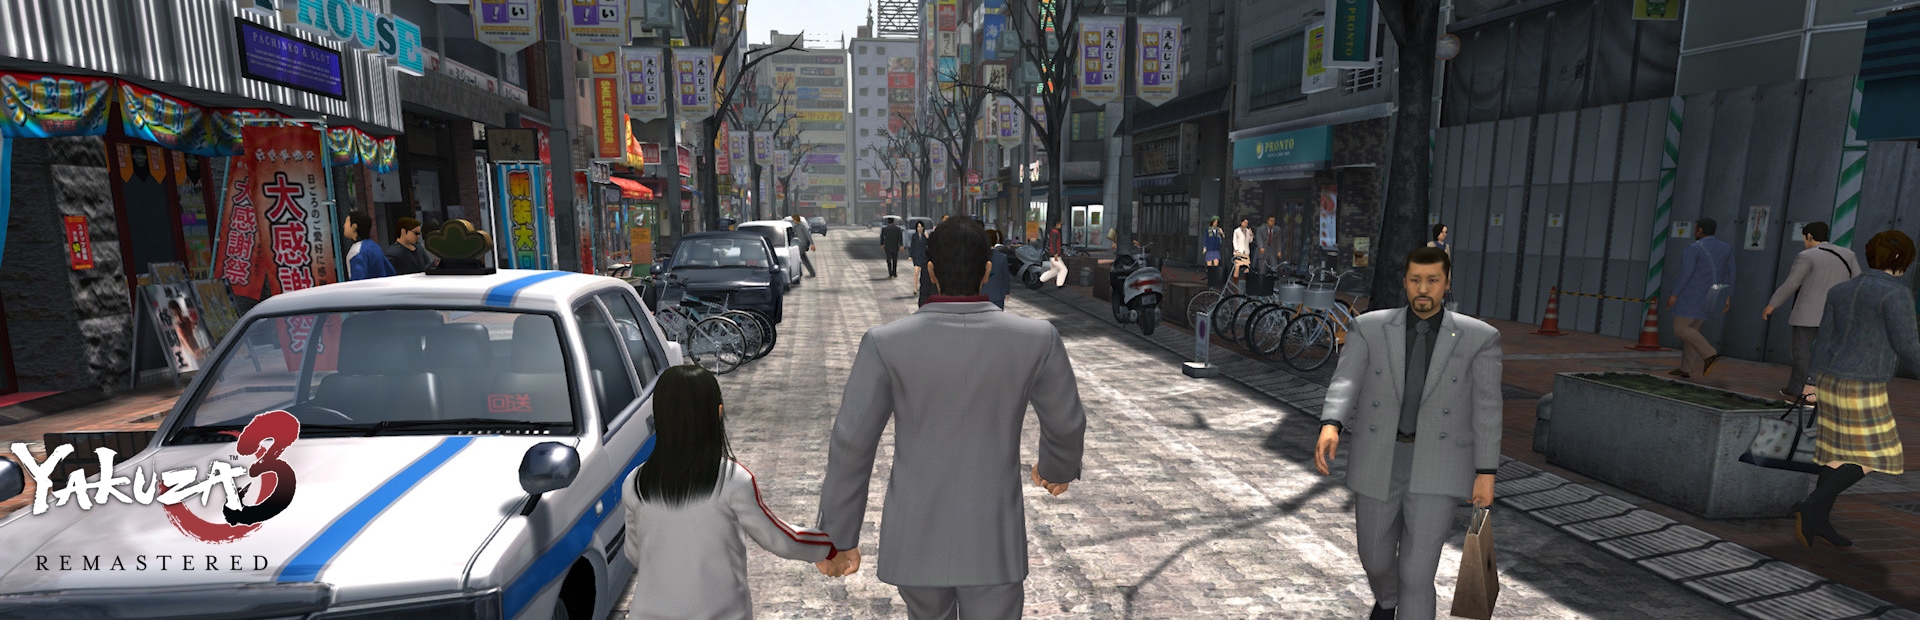 دانلود بازی Yakuza 3 Remastered برای PC | گیمباتو